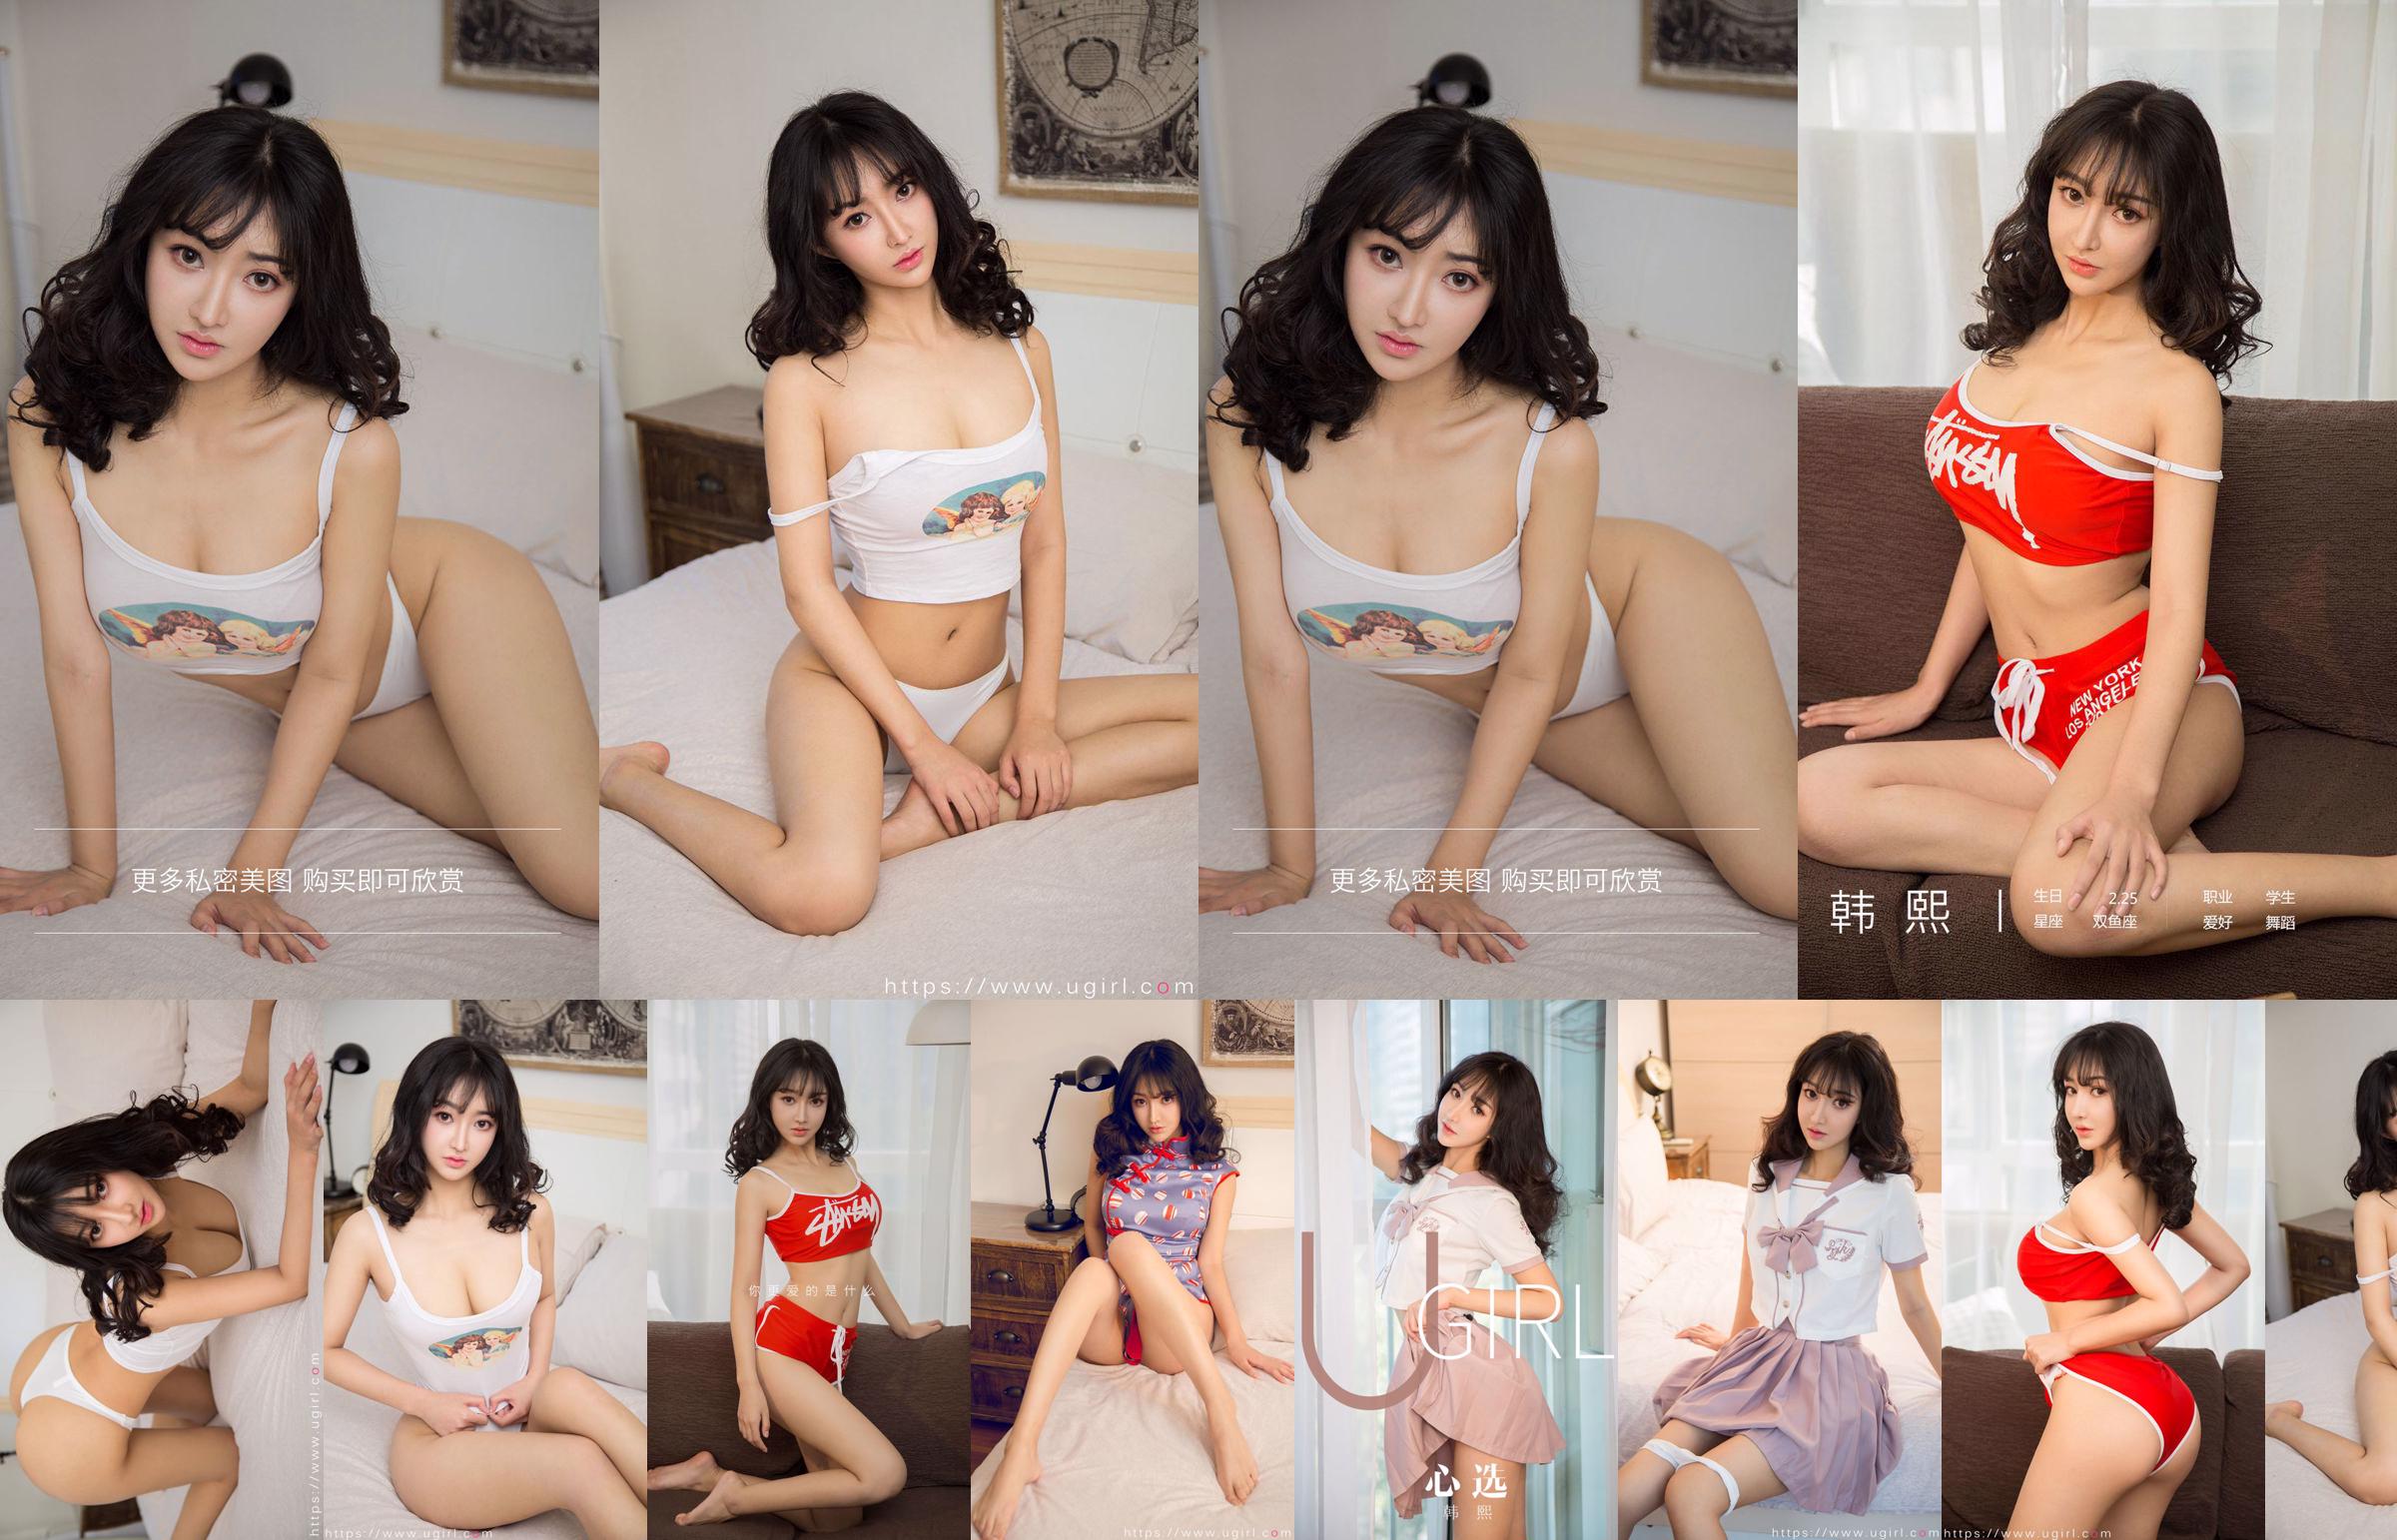 [Home Delivery WordGirls] No.812 Xi Shui Shui Schönes Mädchen Auszubildender No.b869af Seite 8